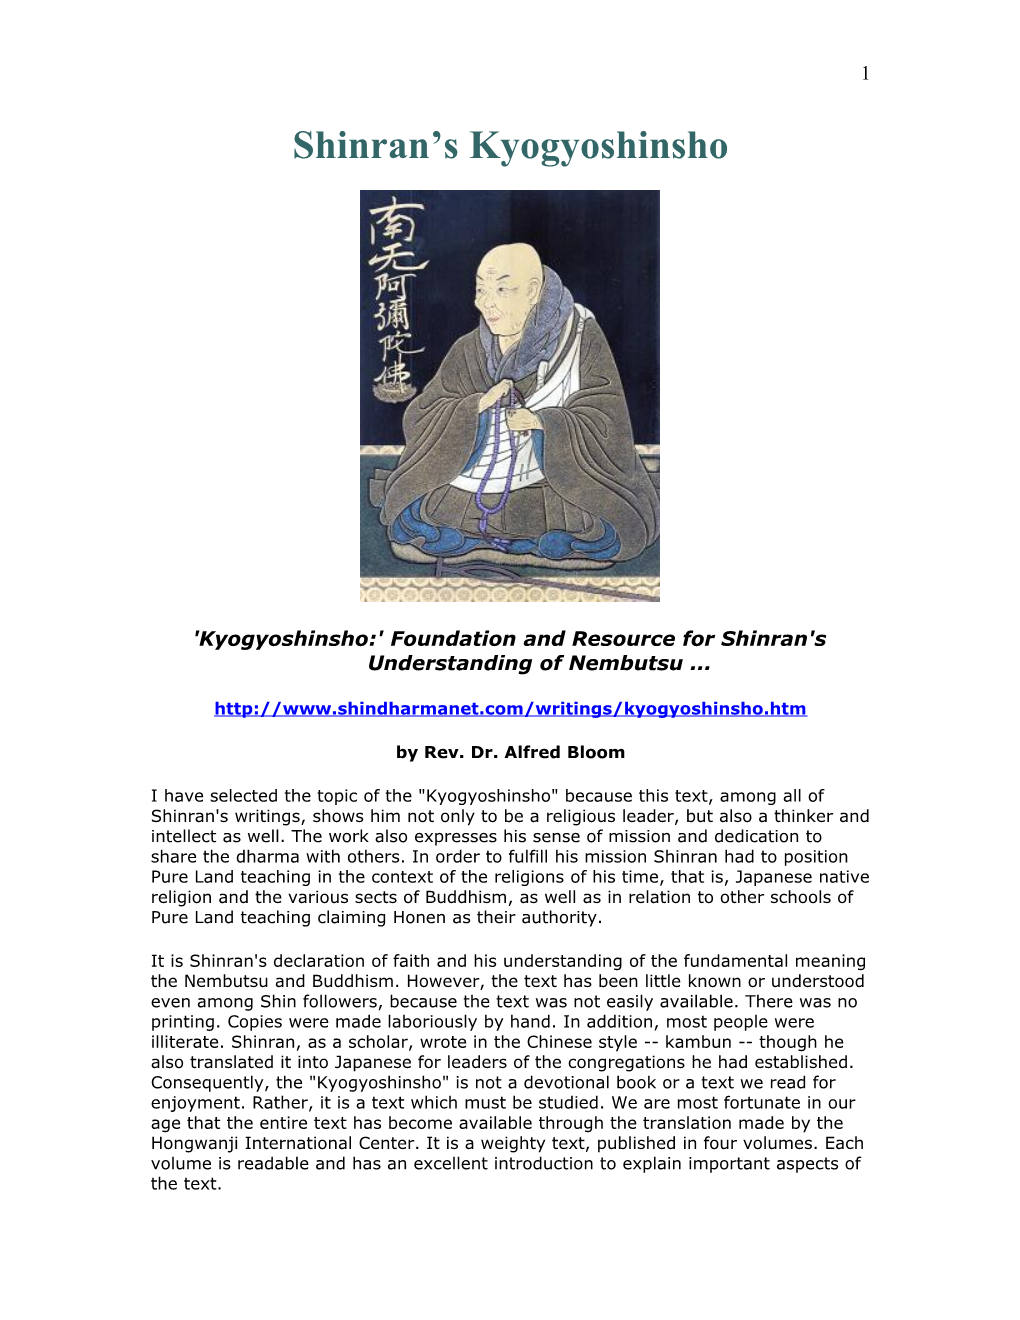 'Kyogyoshinsho:' Foundation and Resource for Shinran's Understanding of Nembutsu